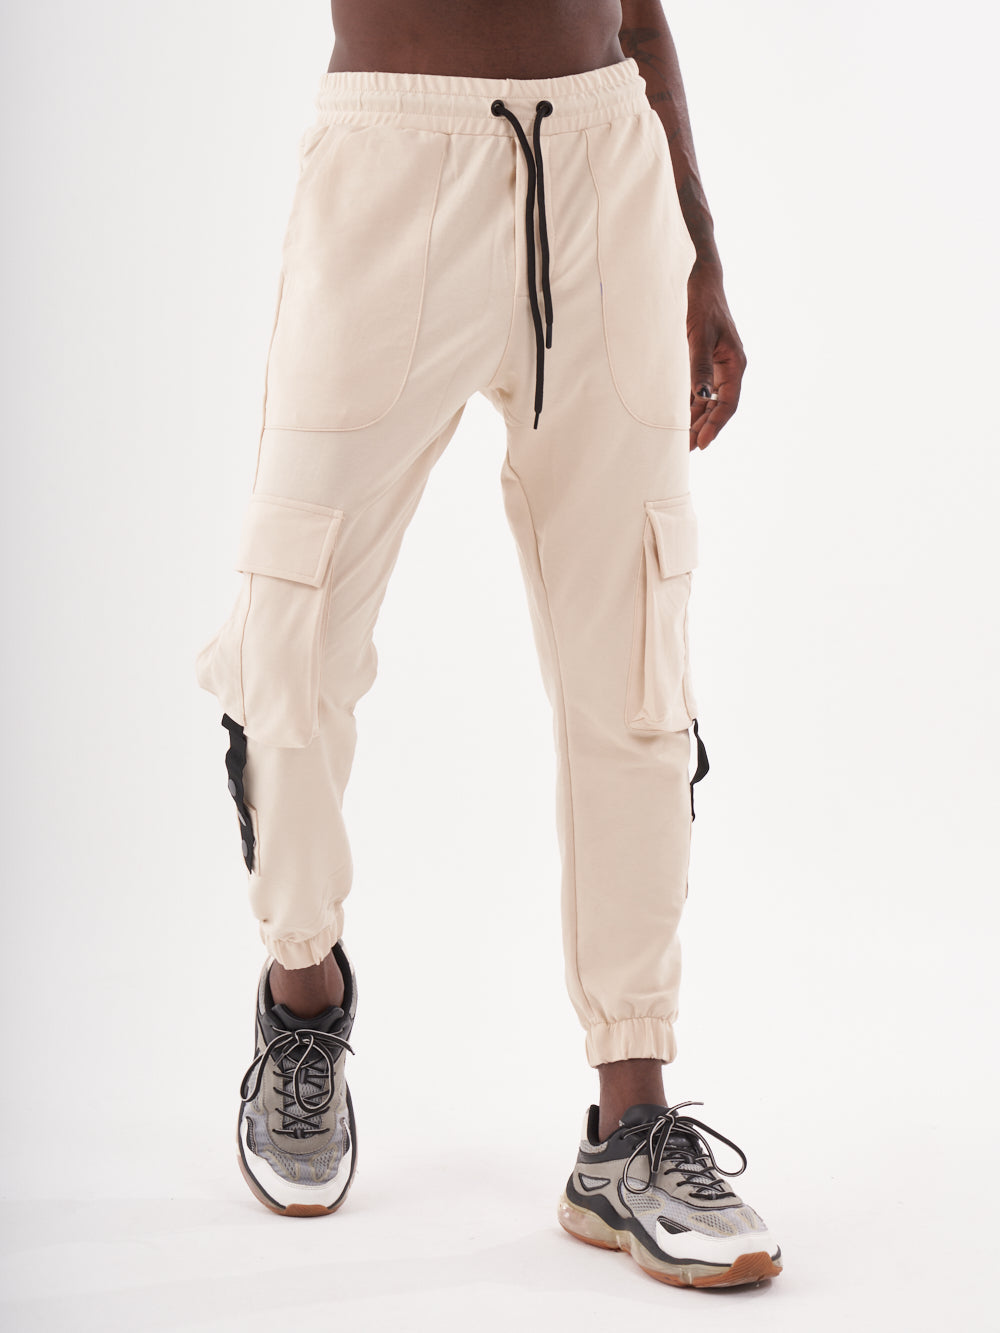 Streetwear Style Sweatpants & SERNES Men Joggers - for